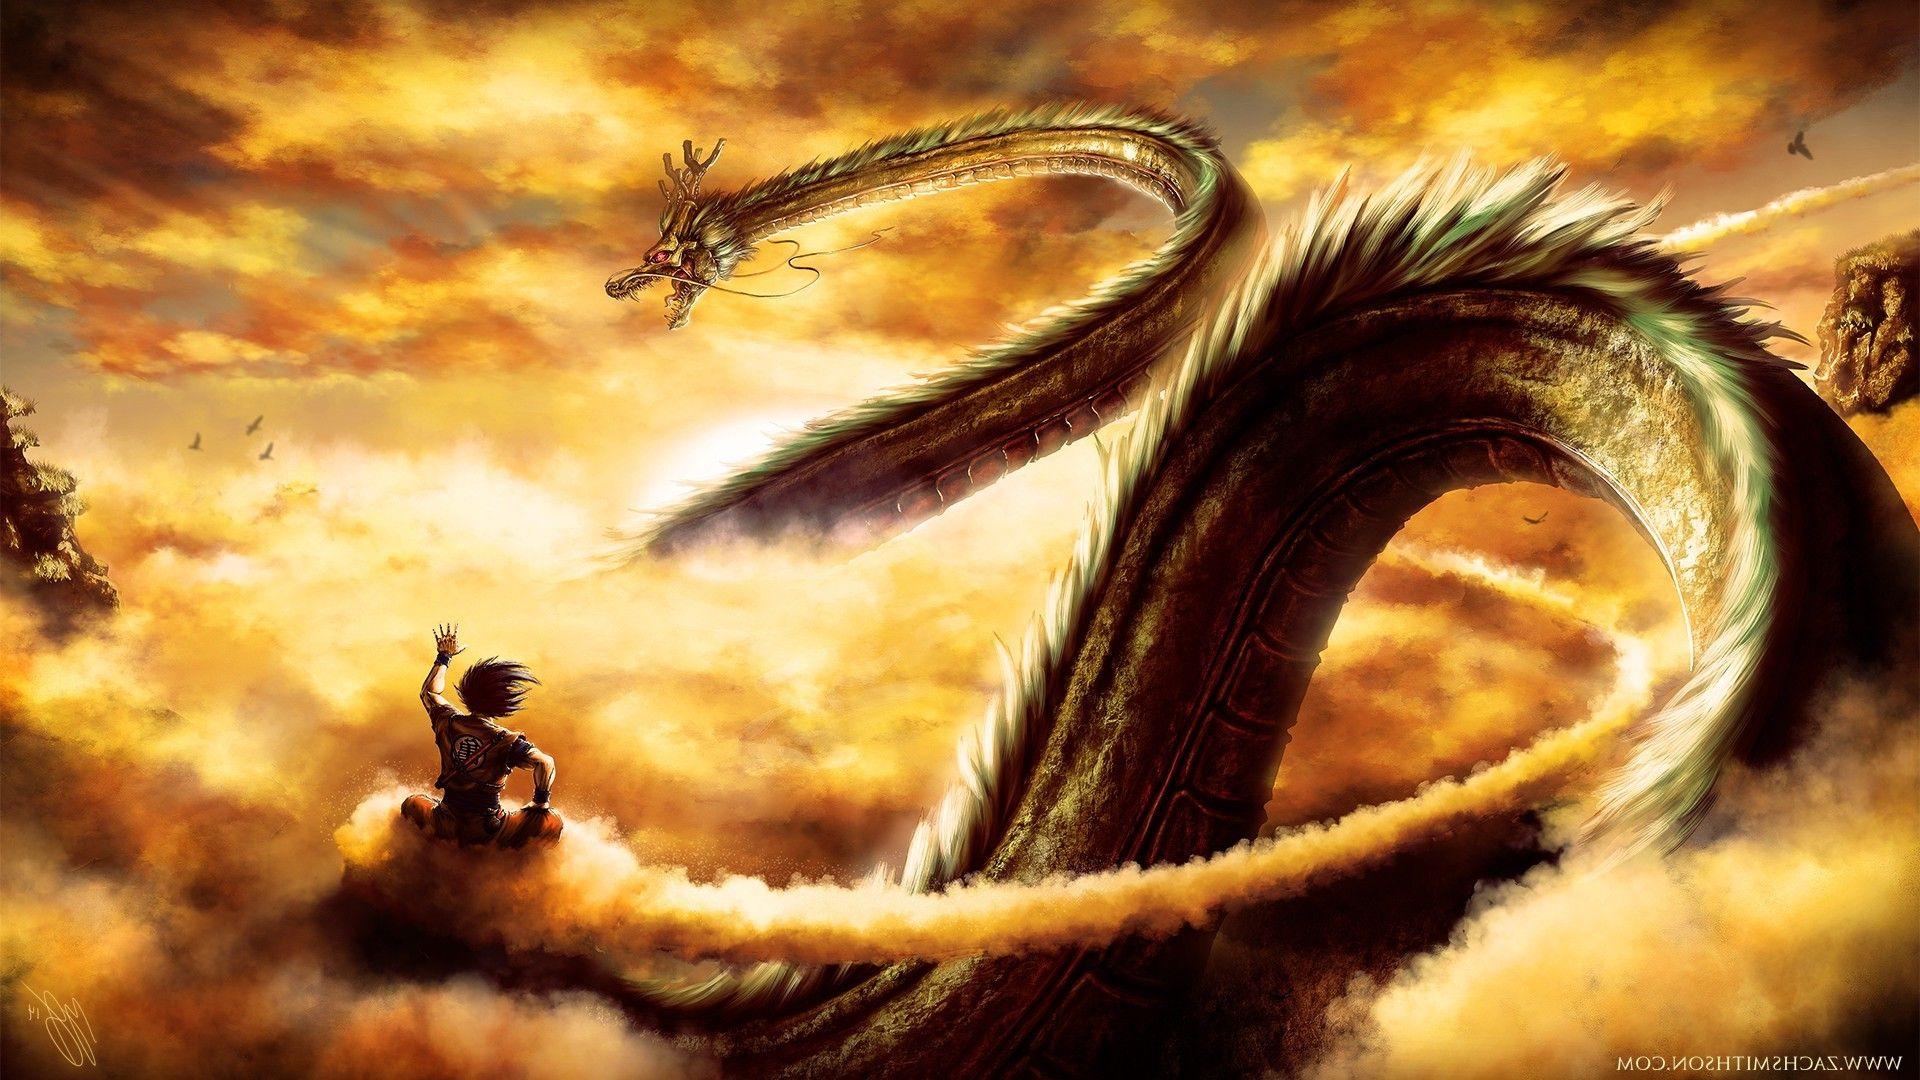 Wallpapers : Dragon Ball, Son Goku, dragon, Dragon Ball Z, mythology